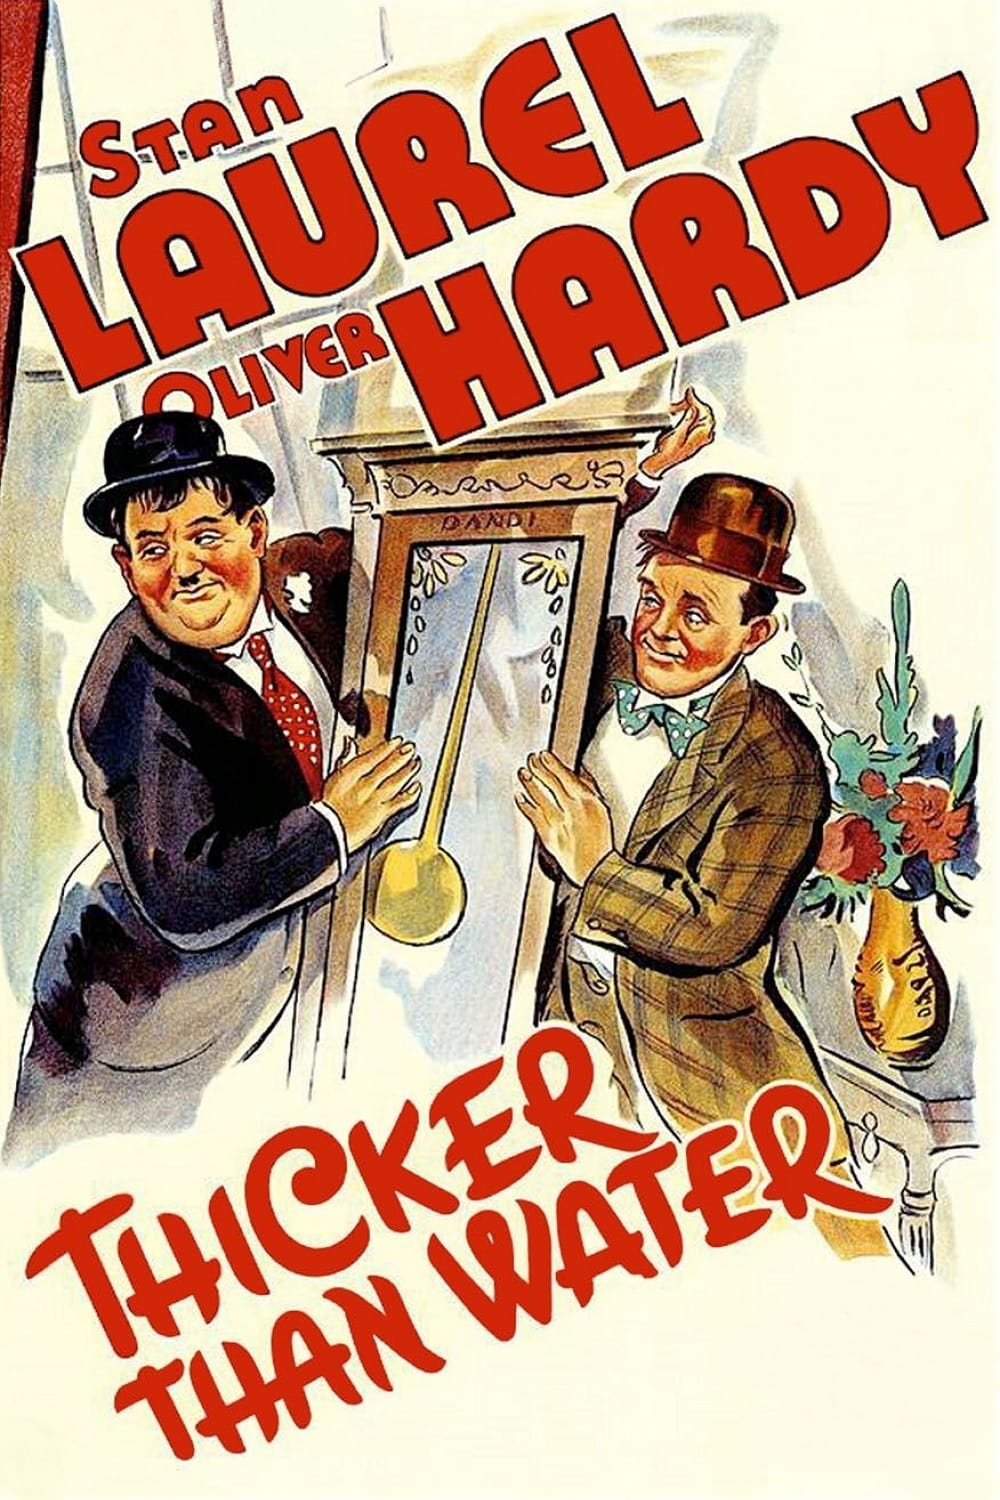 Laurel und Hardy: Zum Nachtisch weiche Birne